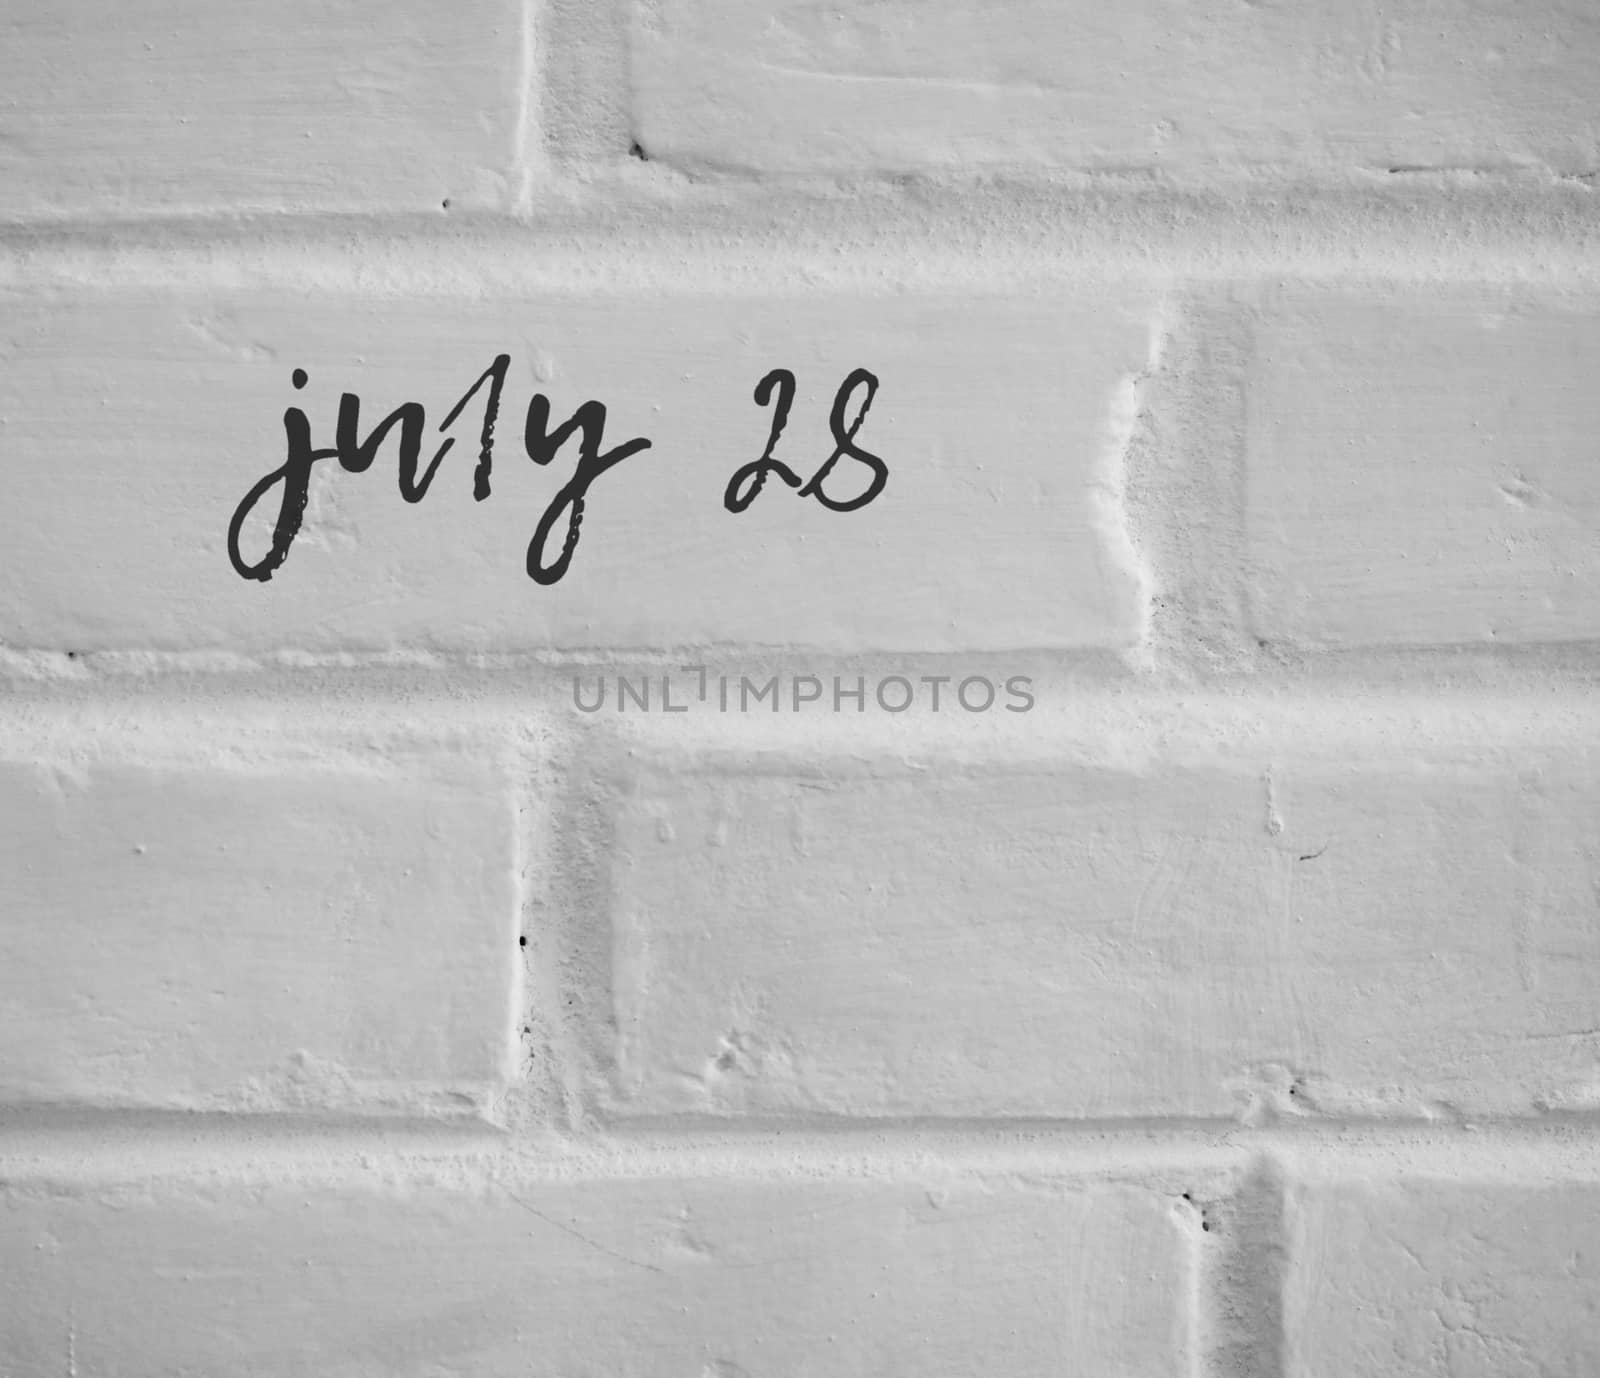 PHOTO OF july 28 WRITTEN ON WHITE PLAIN BRICK WALL